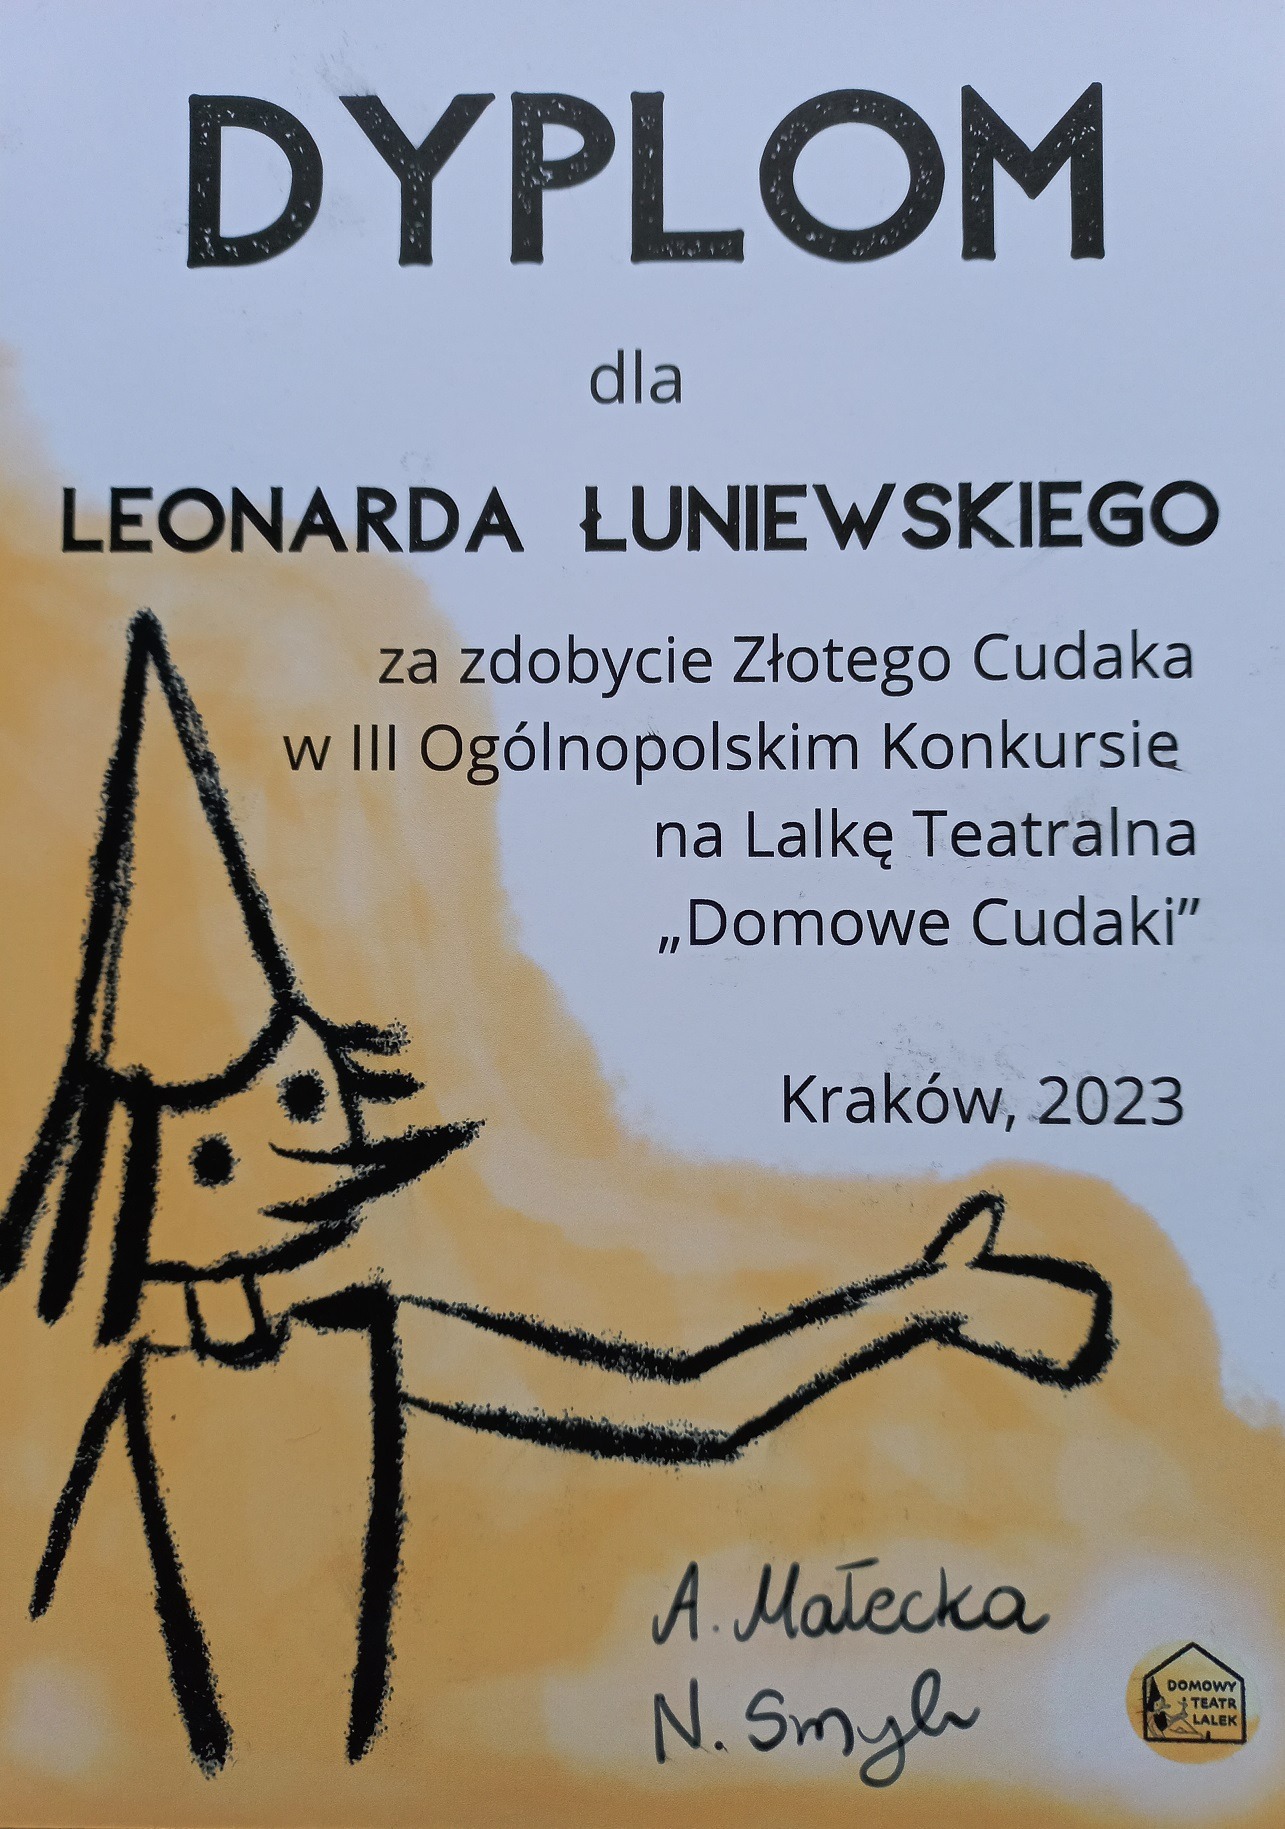 Dyplom dla Leonarda Łuniewskiego za zdobycie Złotego Cudaka w III Ogólnopolskim Konkursie na Lalkę Teatralną "Domowe Cudaki", Kraków 2023